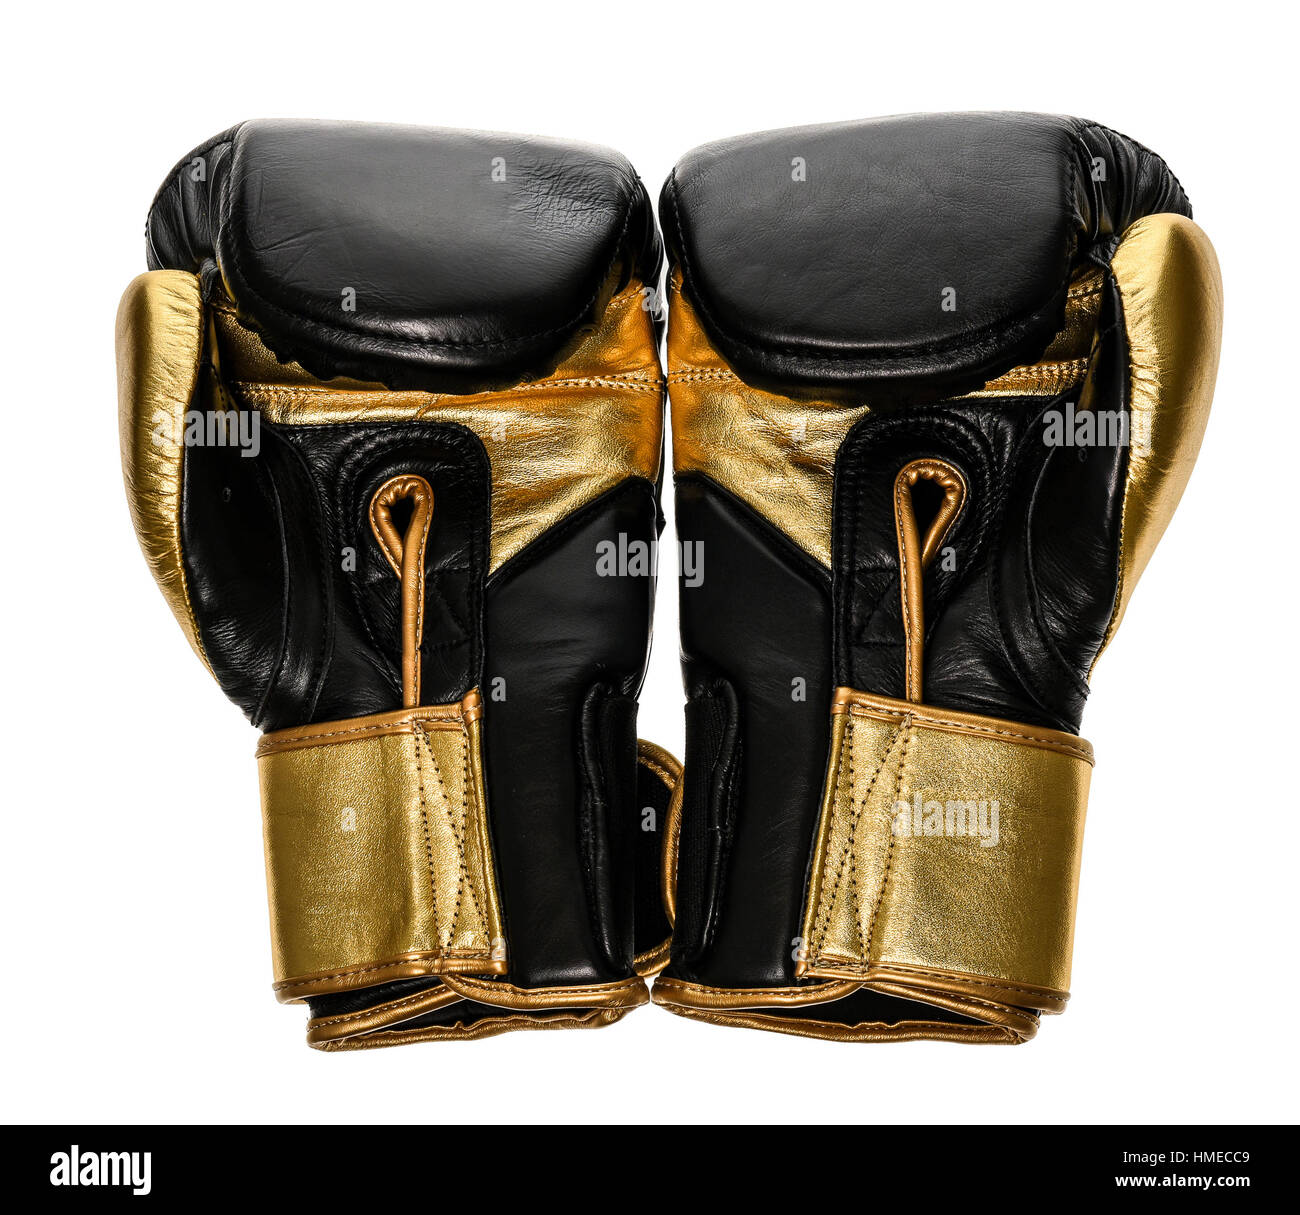 Disfraz de Boxeador guante de oro para hombre